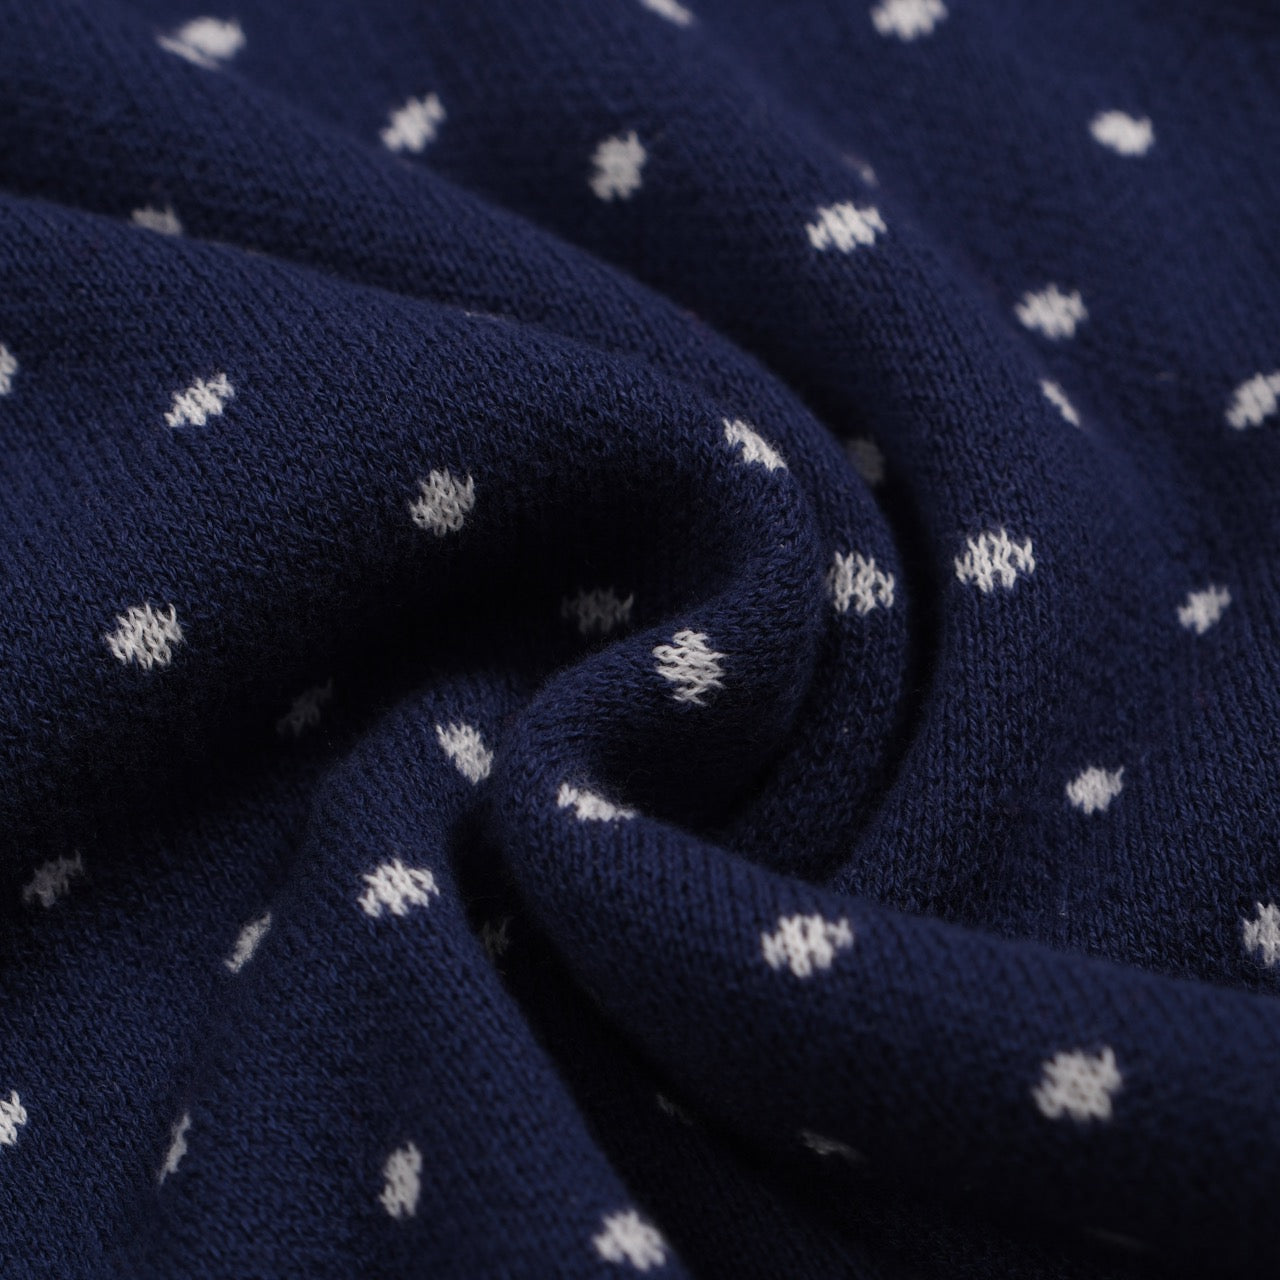 Men's white polka dot knitted blue short-sleeved polo shirt